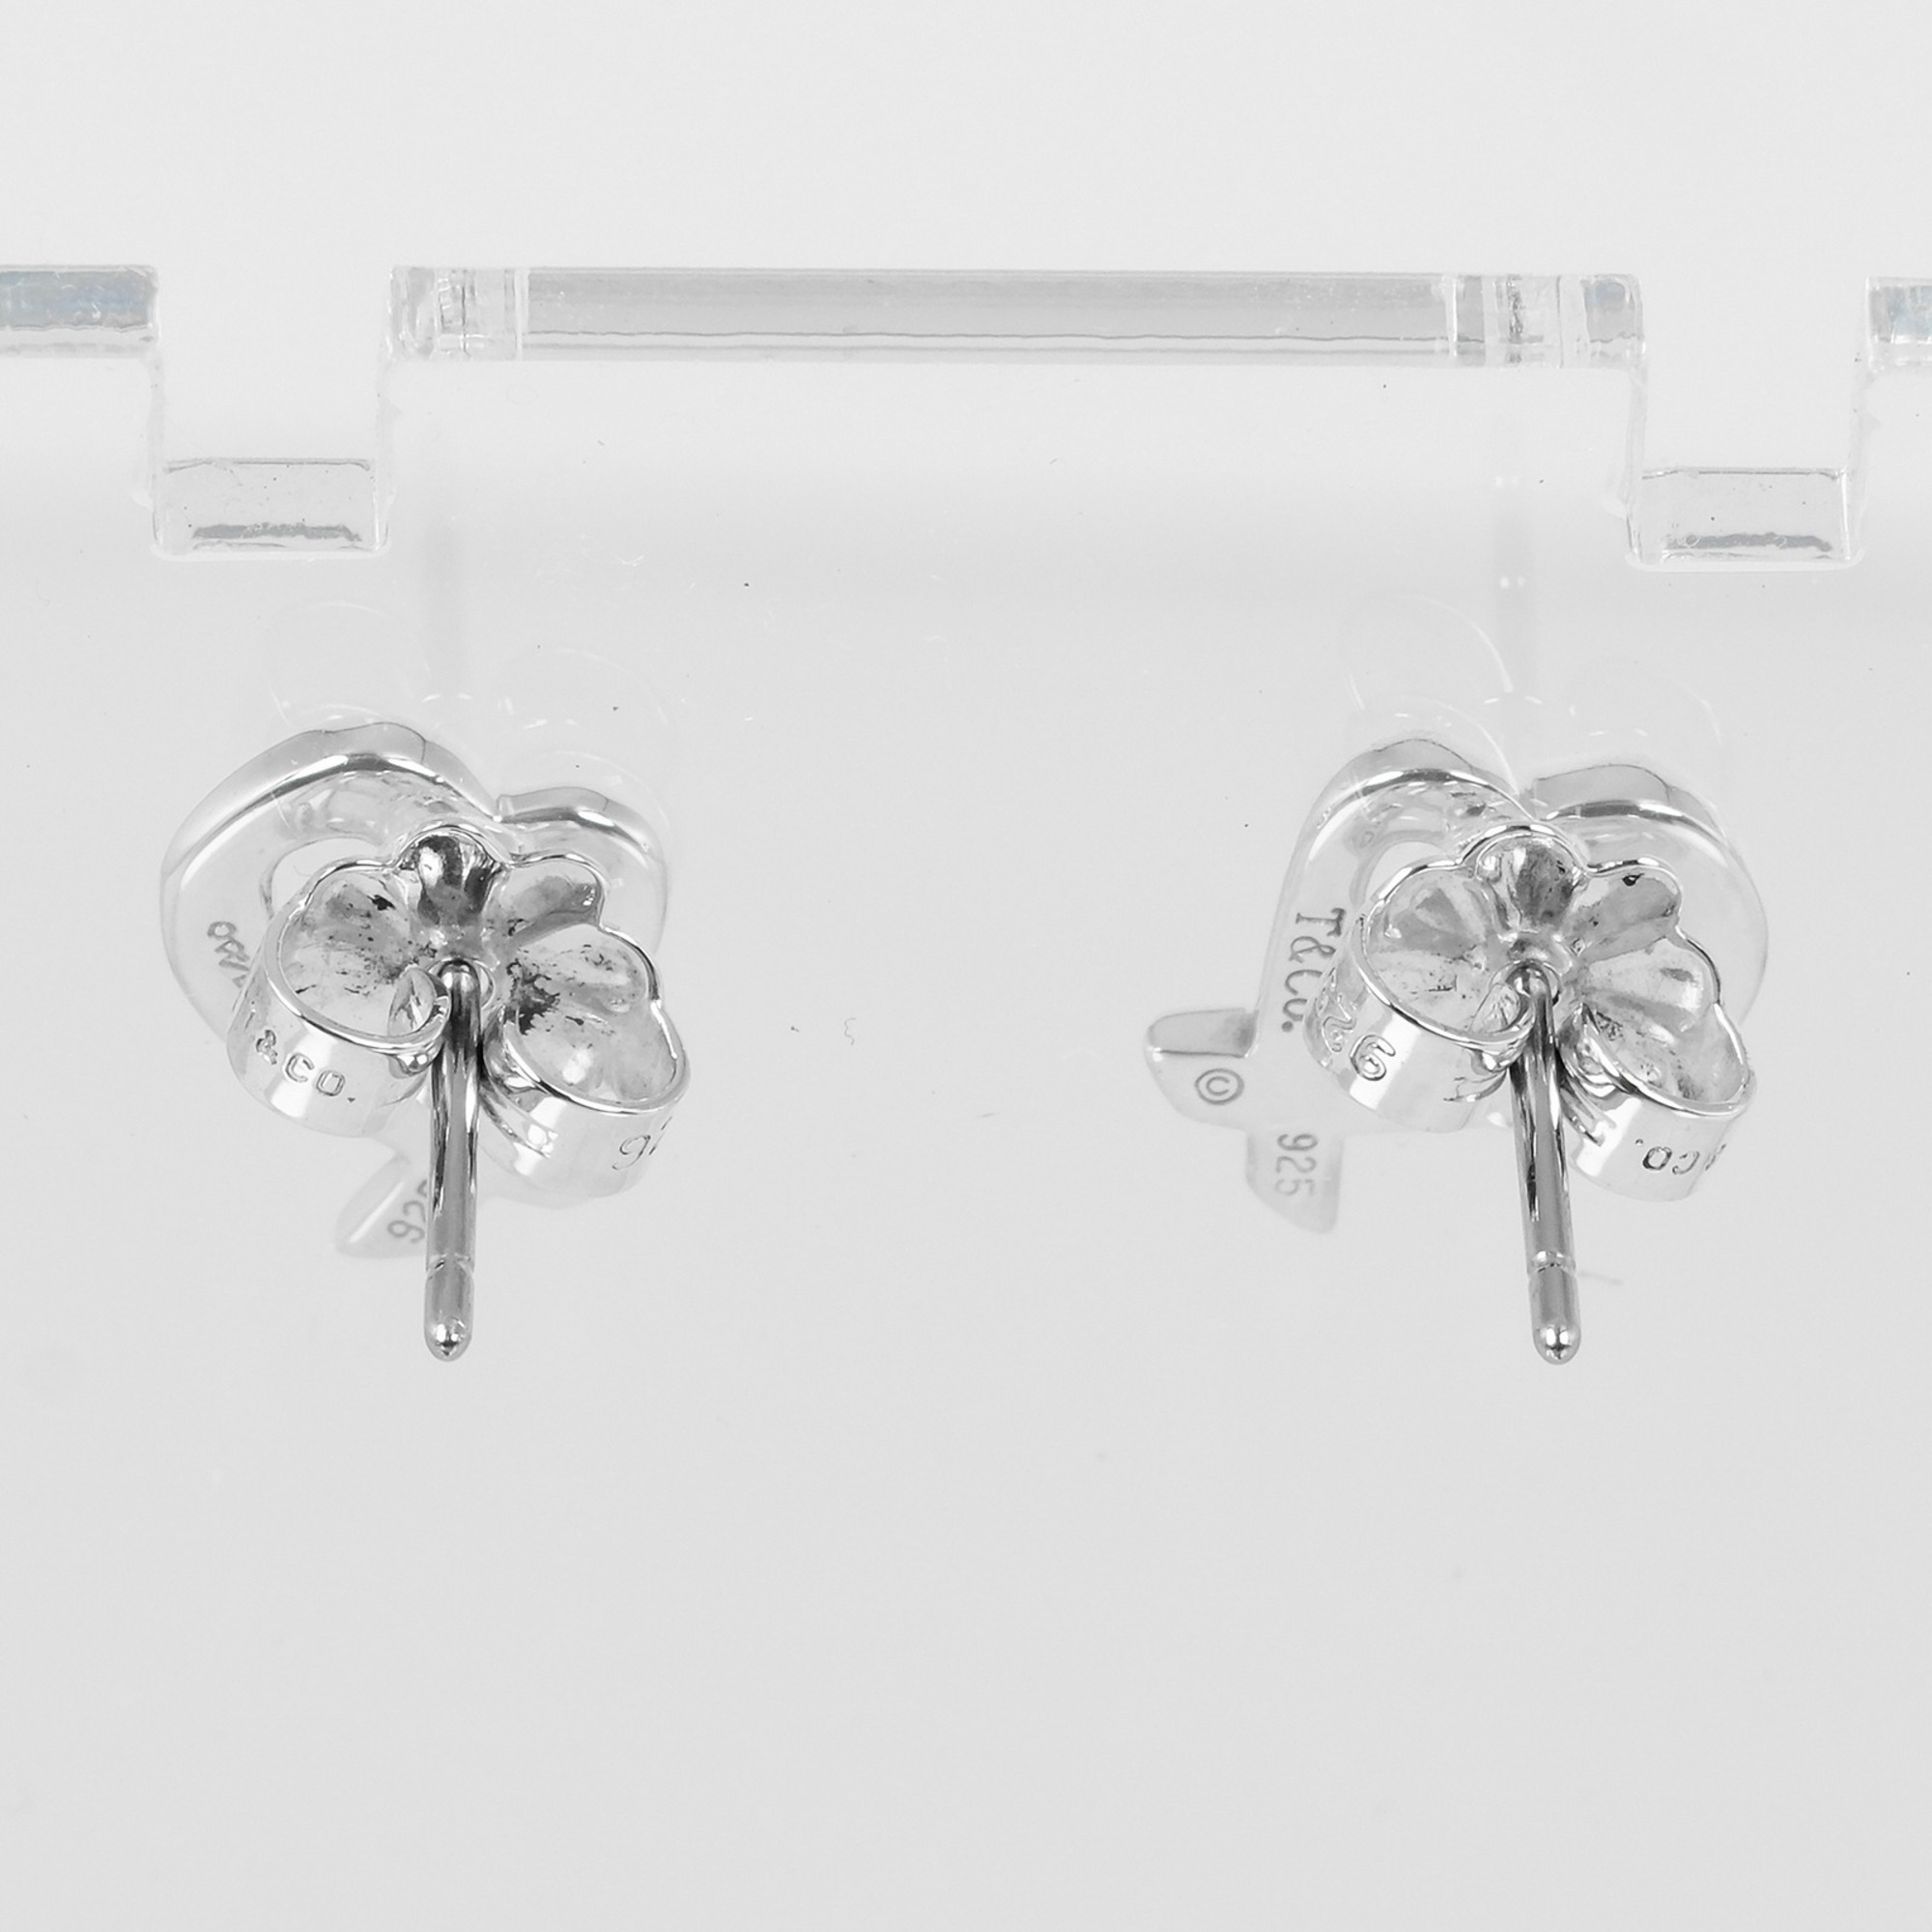 Tiffany & Co. Loving Heart Earrings, 925 Silver, approx. 1.58g